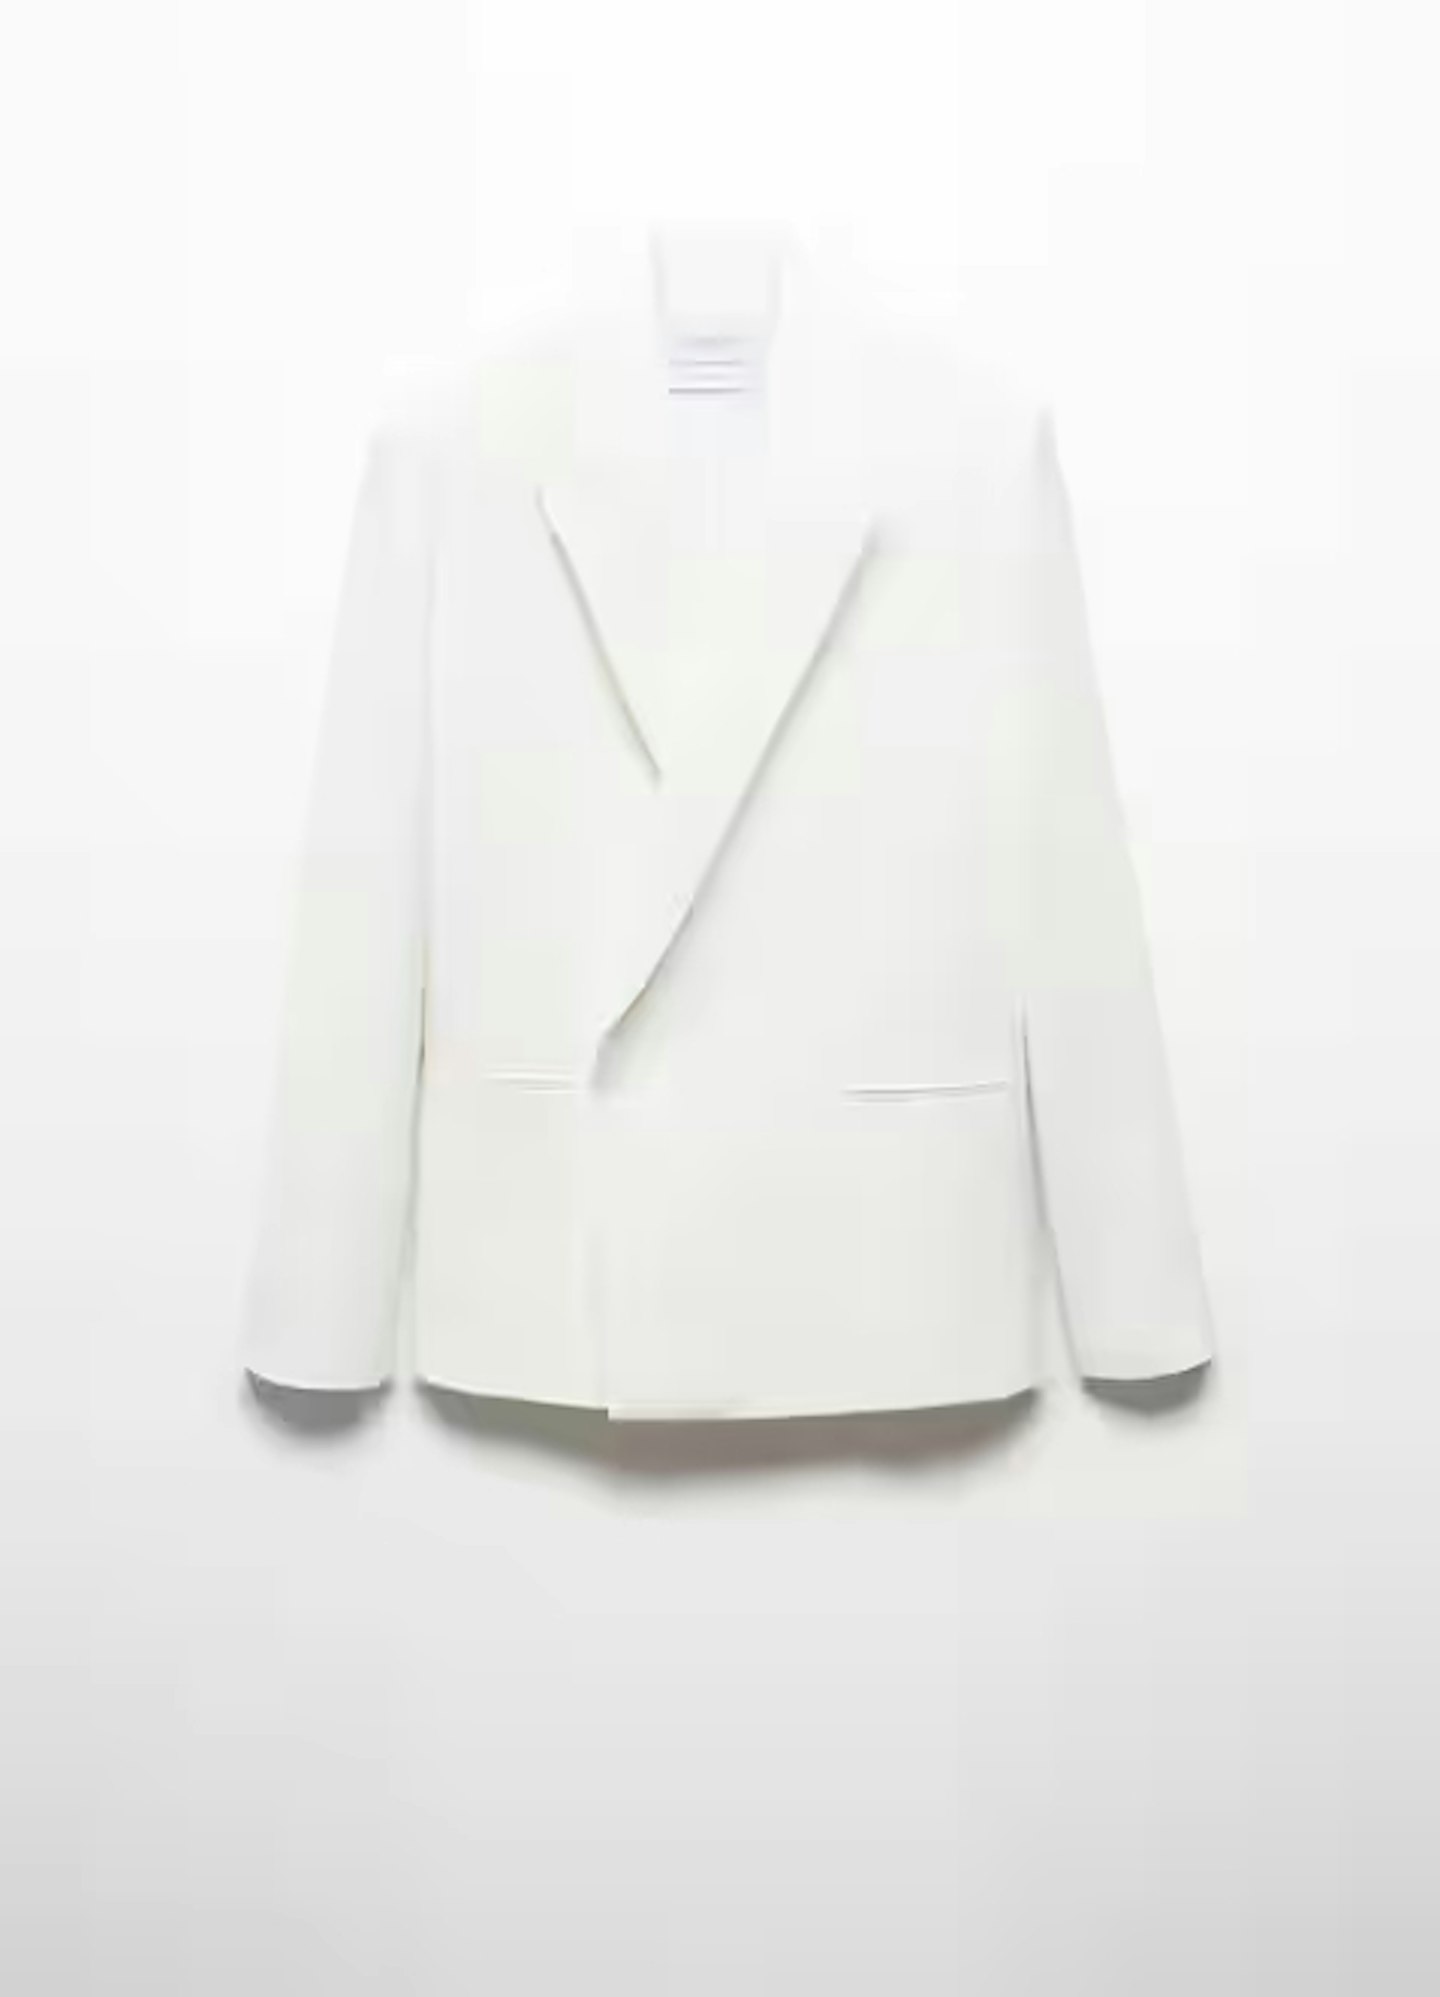 vb mango white suit jacket 